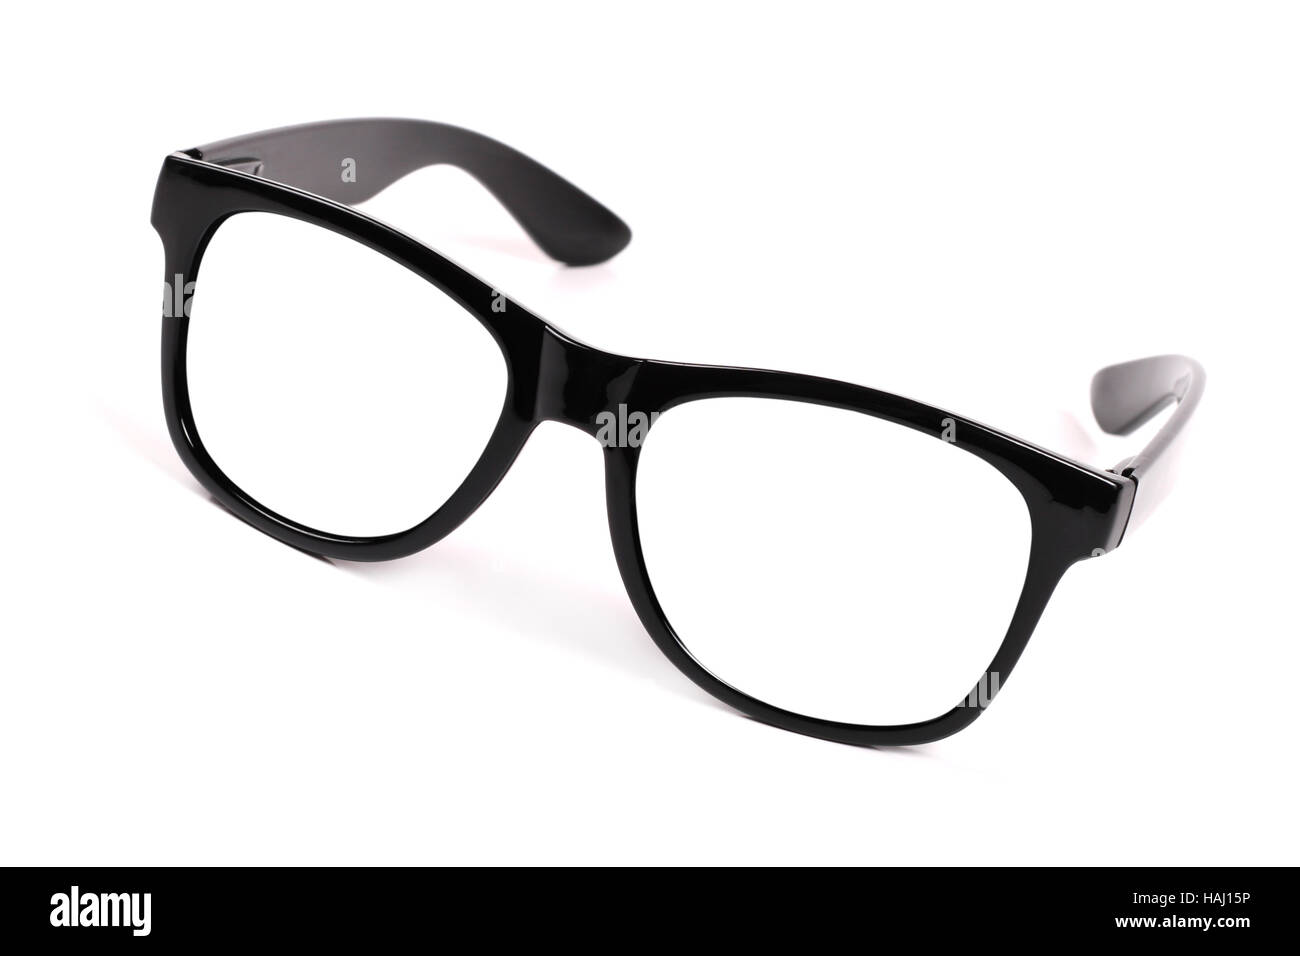 Gafas de montura negra e imágenes de alta resolución - Alamy